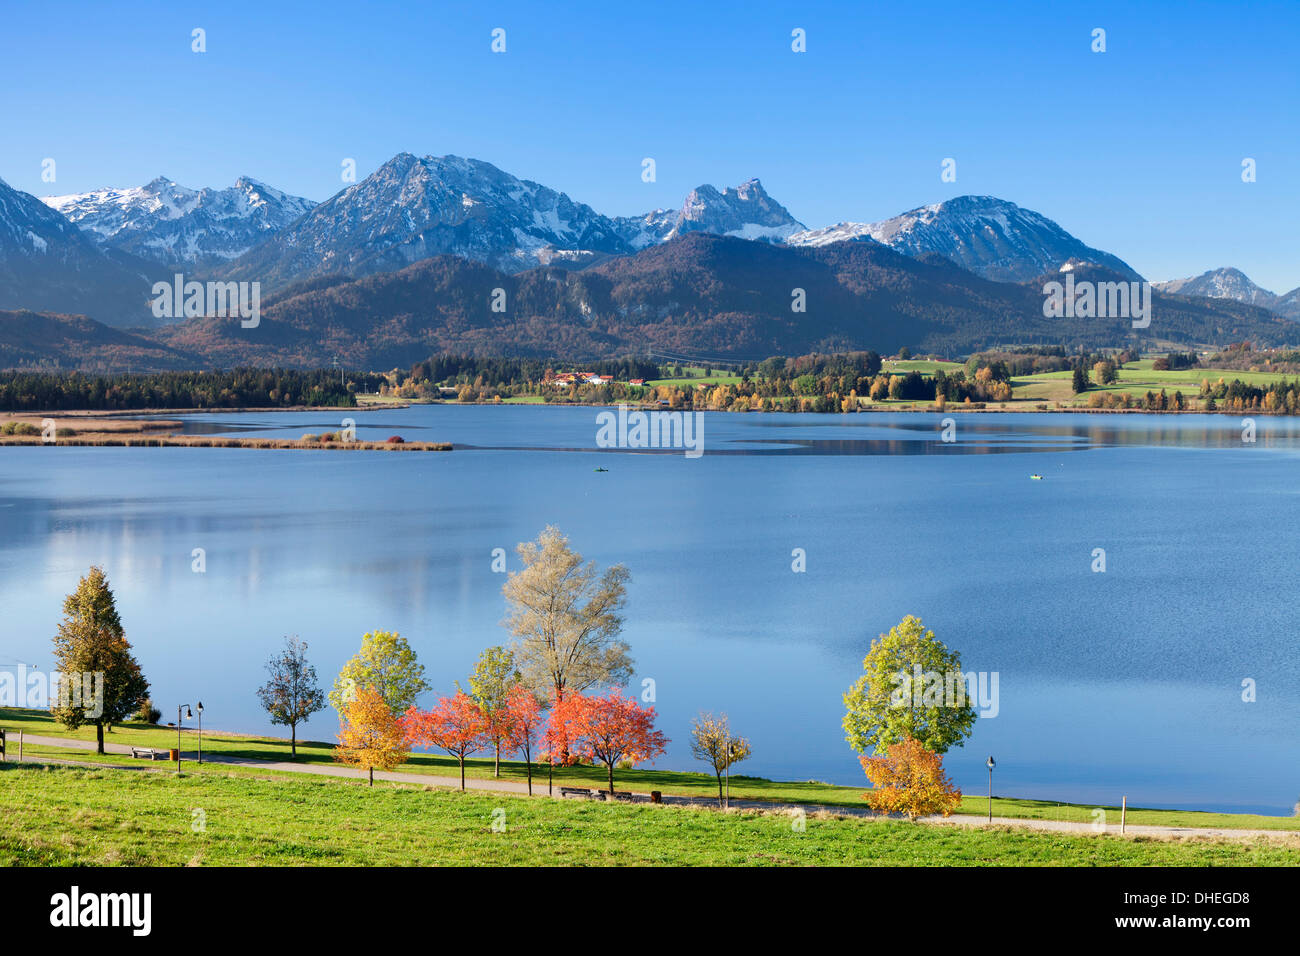 En automne, le lac Hopfensee Füssen, près de l'Allgau, Allgau Alpes, Bavaria, Germany, Europe Banque D'Images